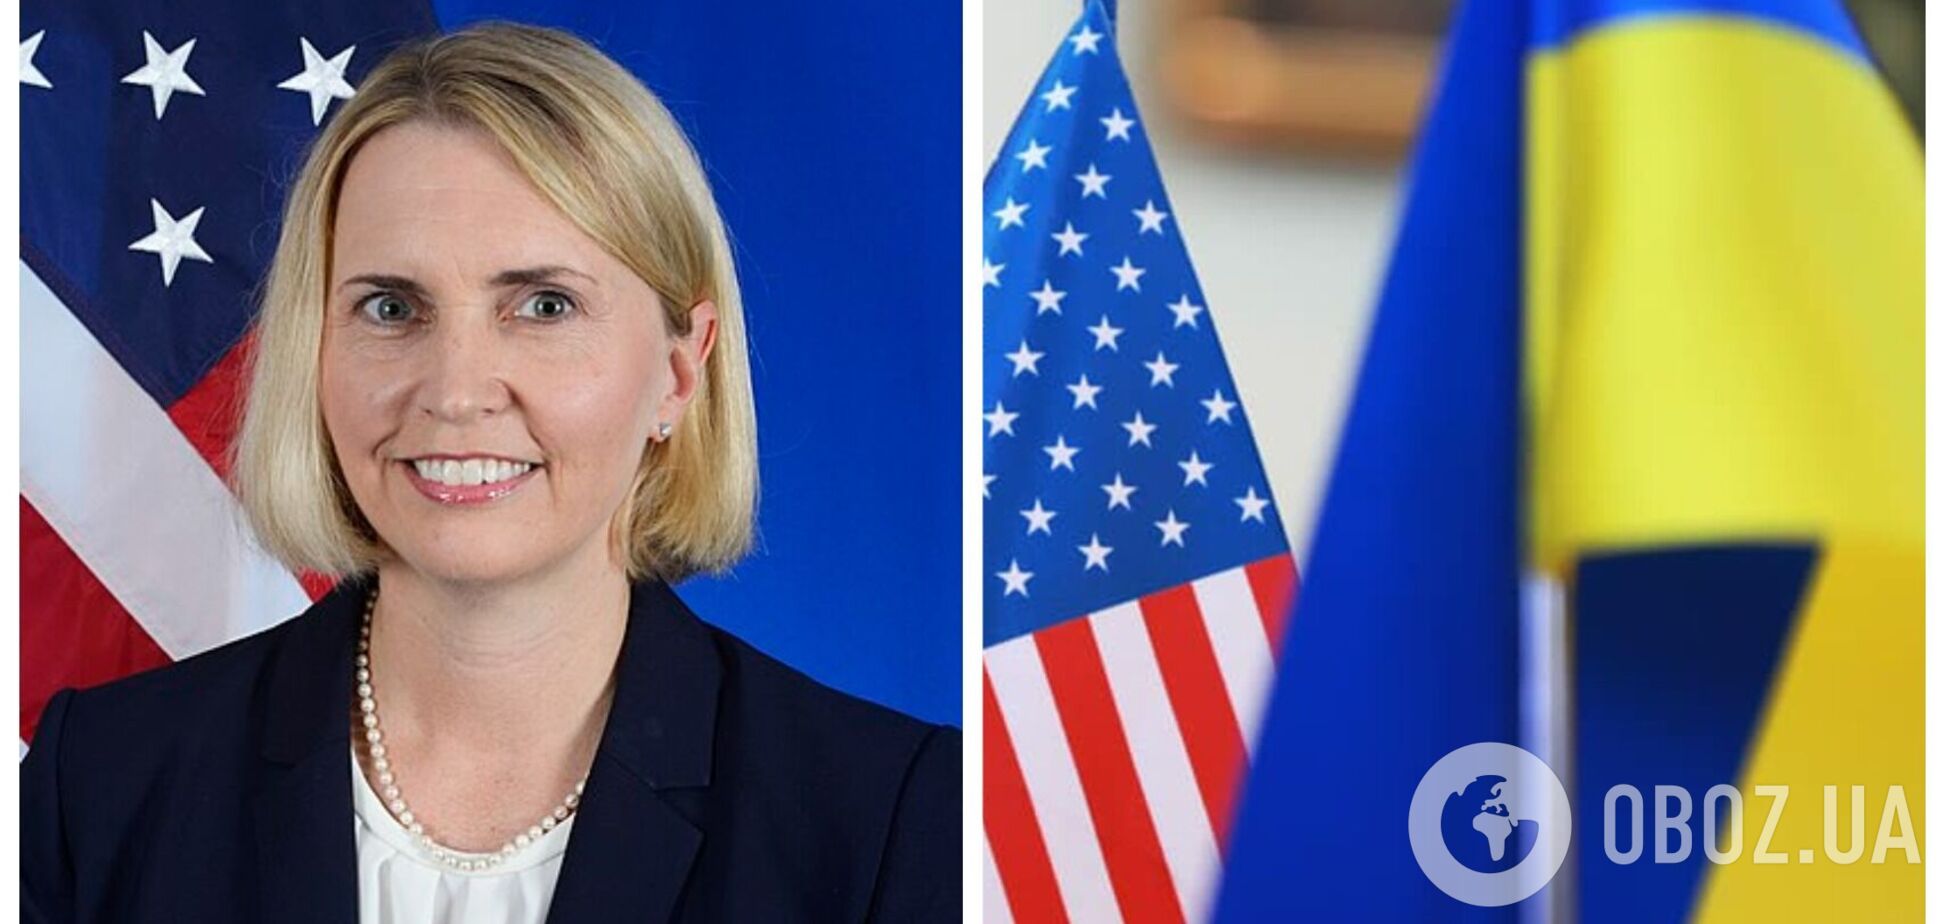 Крым – это Украина: в посольстве США поддержали движение Украины к победе и освобождению всех территорий